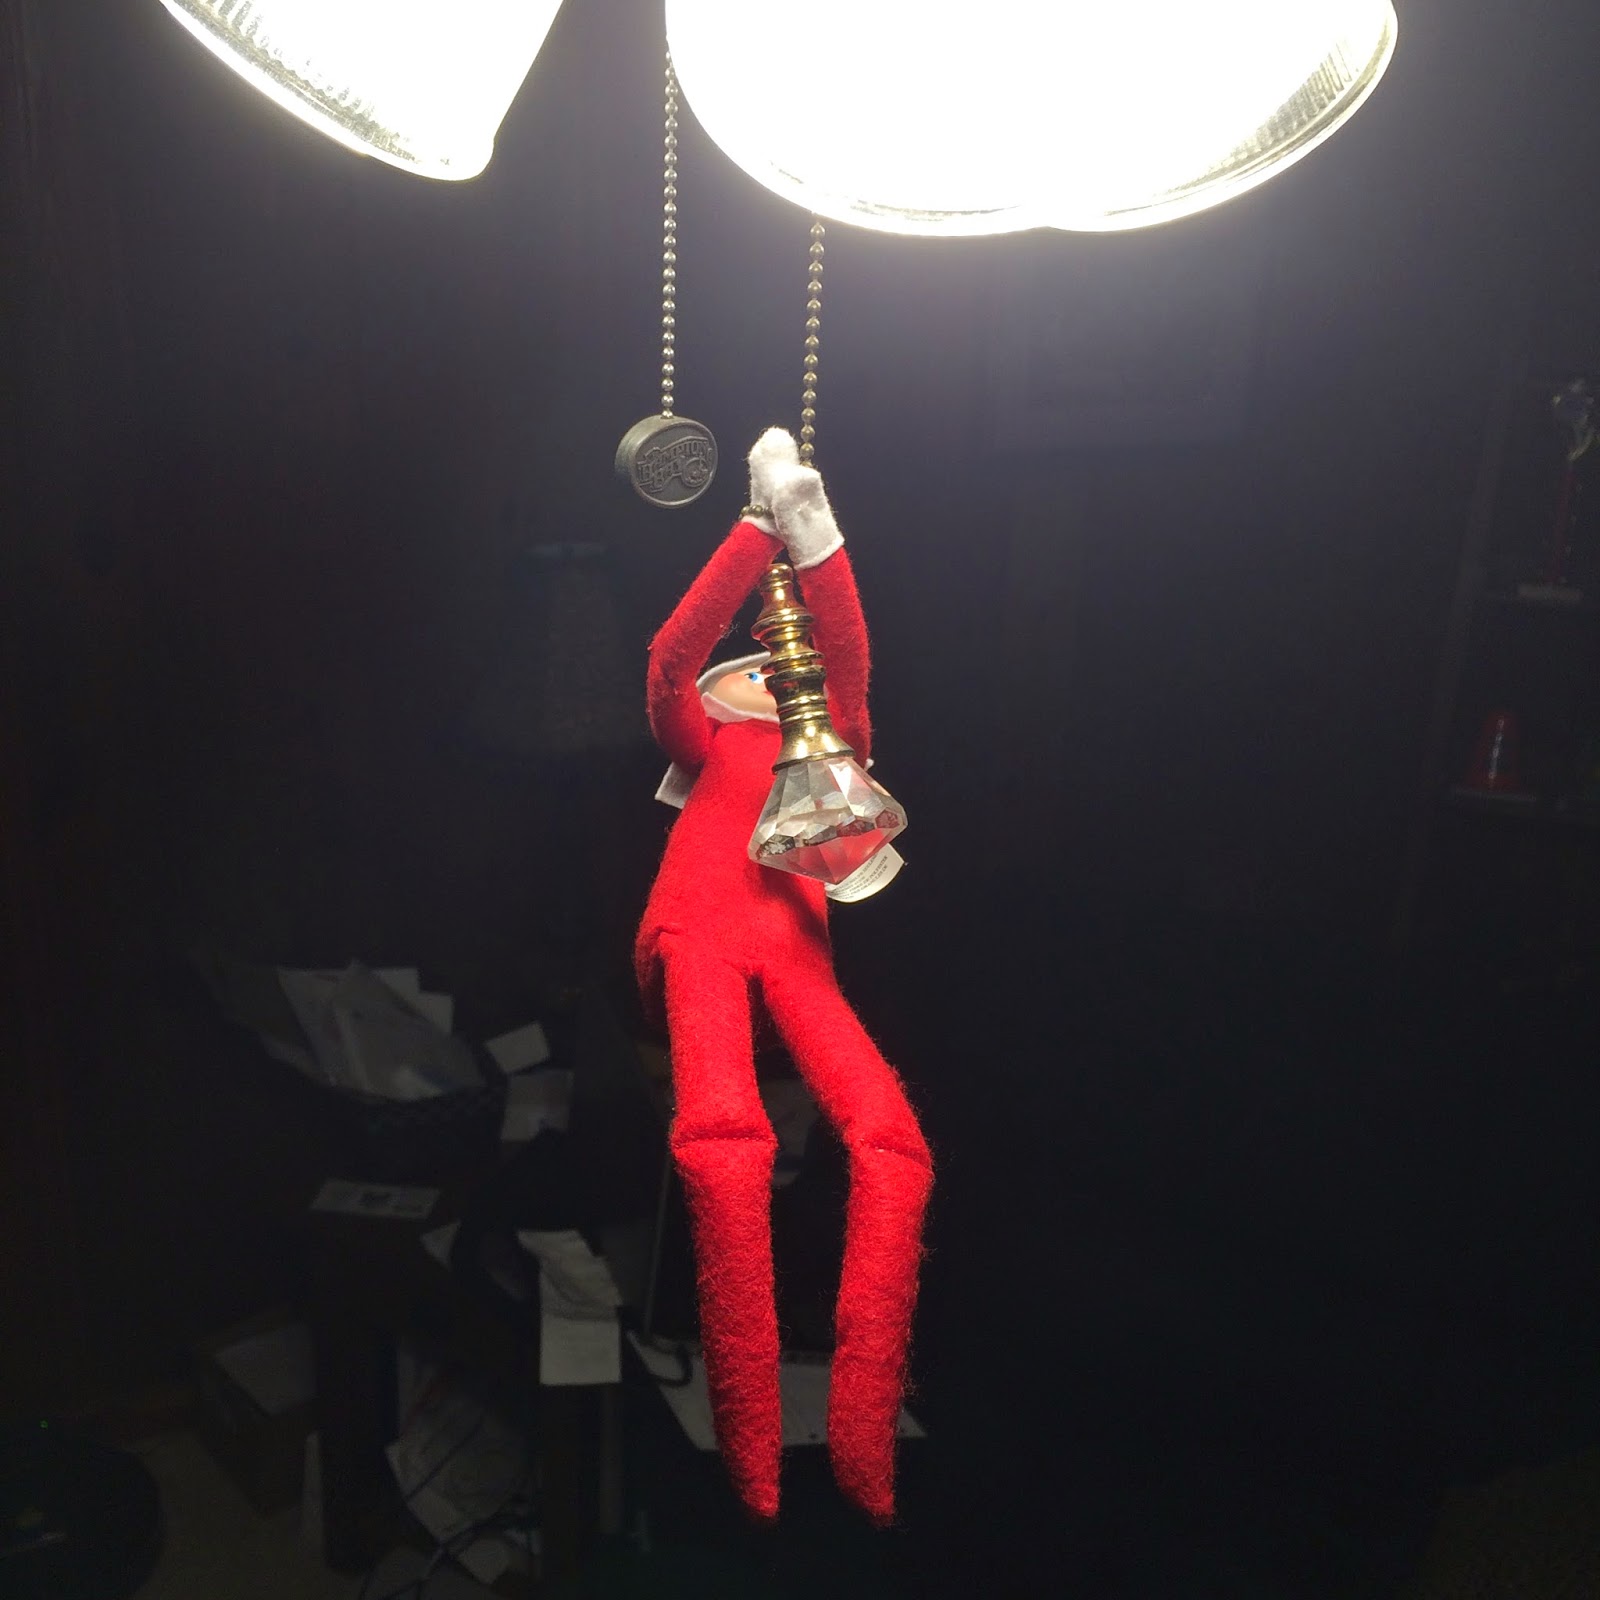 Elf on the Shelf pulling ceiling fan chain